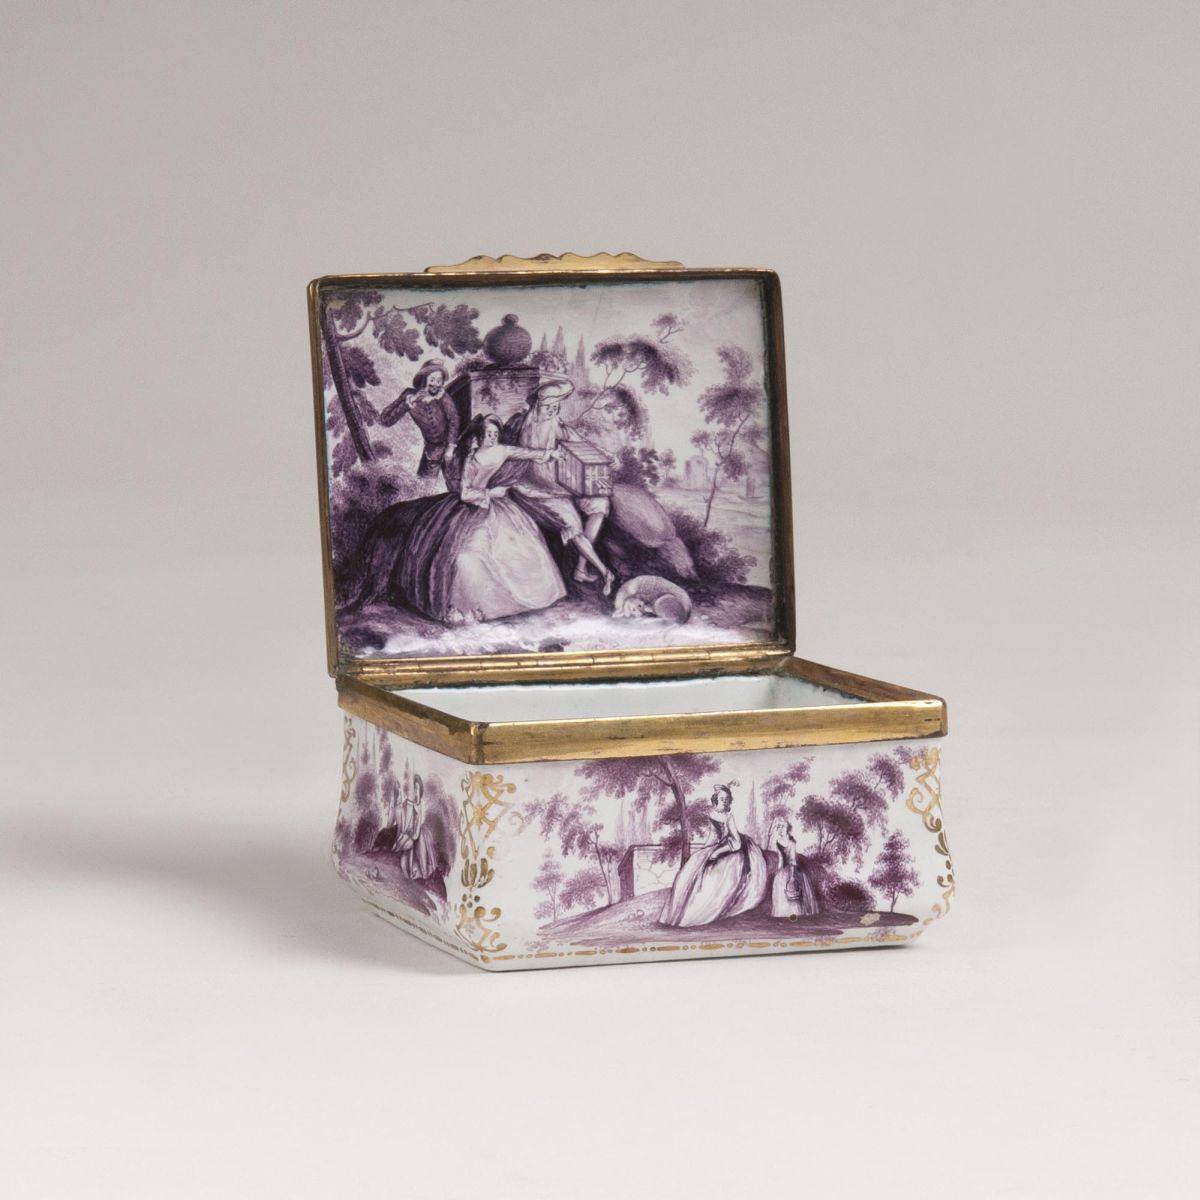 An Enamel Snuff Box with Watteau Scenes in Purple Monochrome - image 2